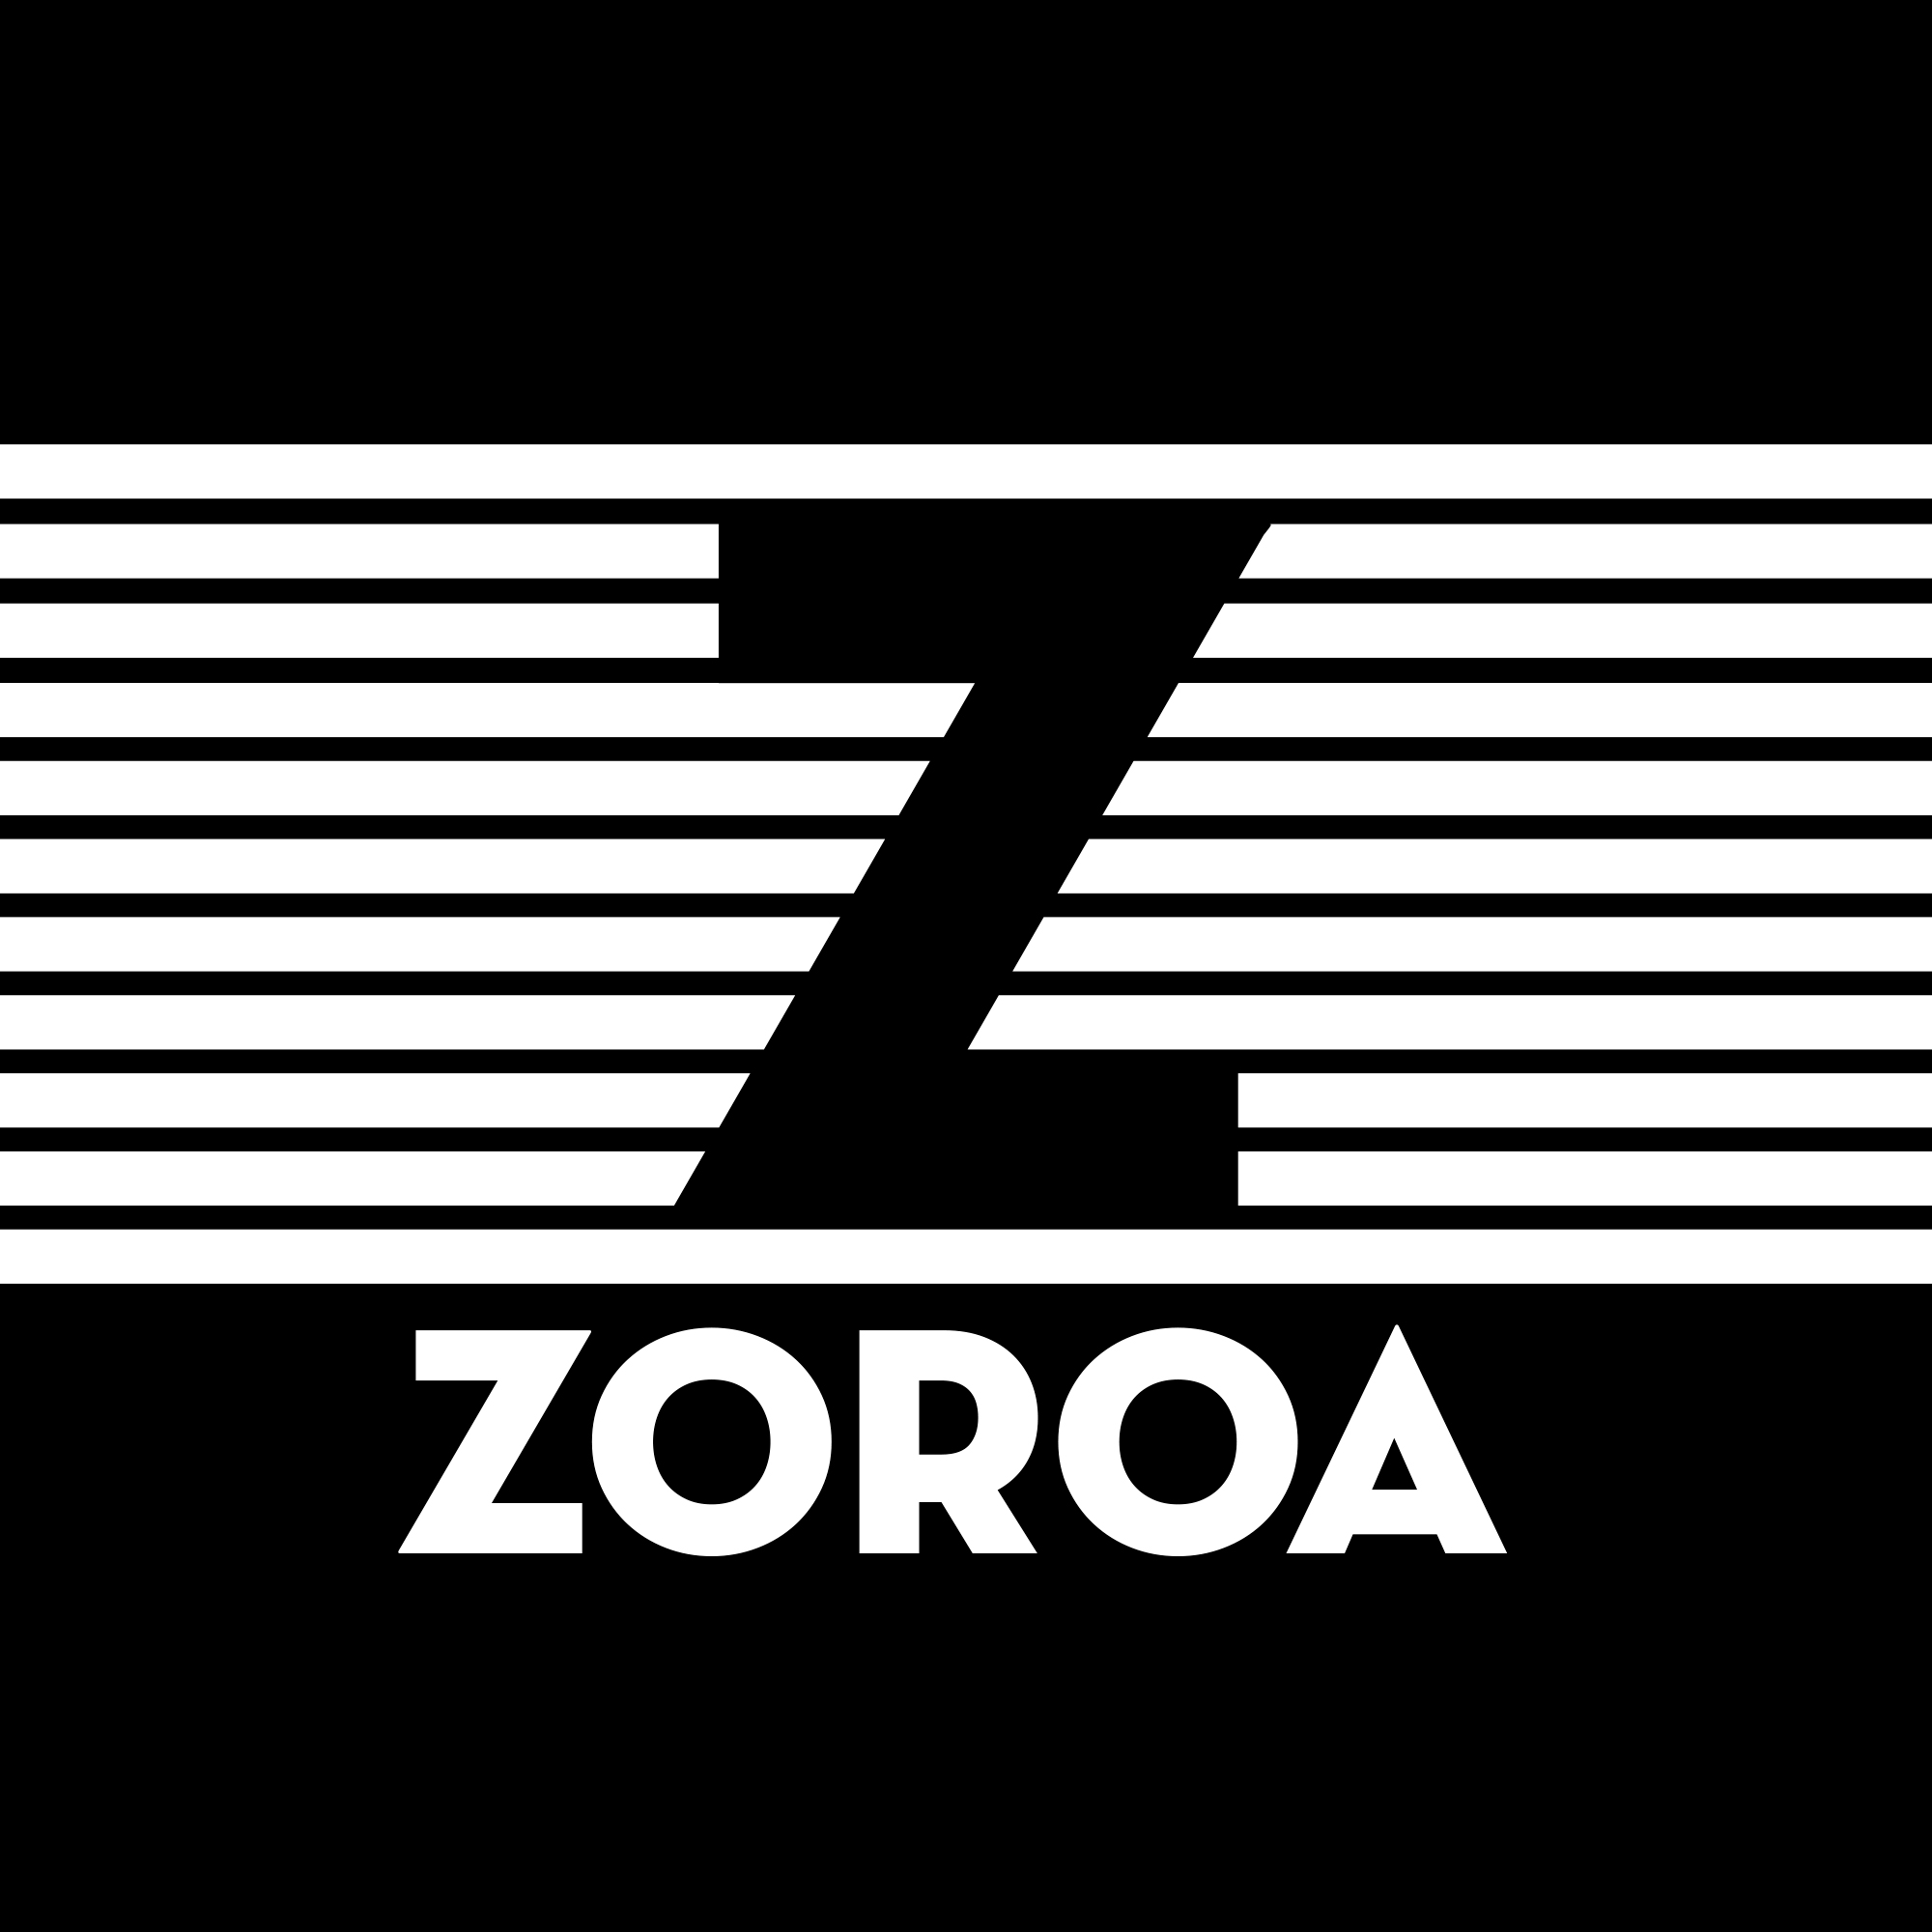 zoroa